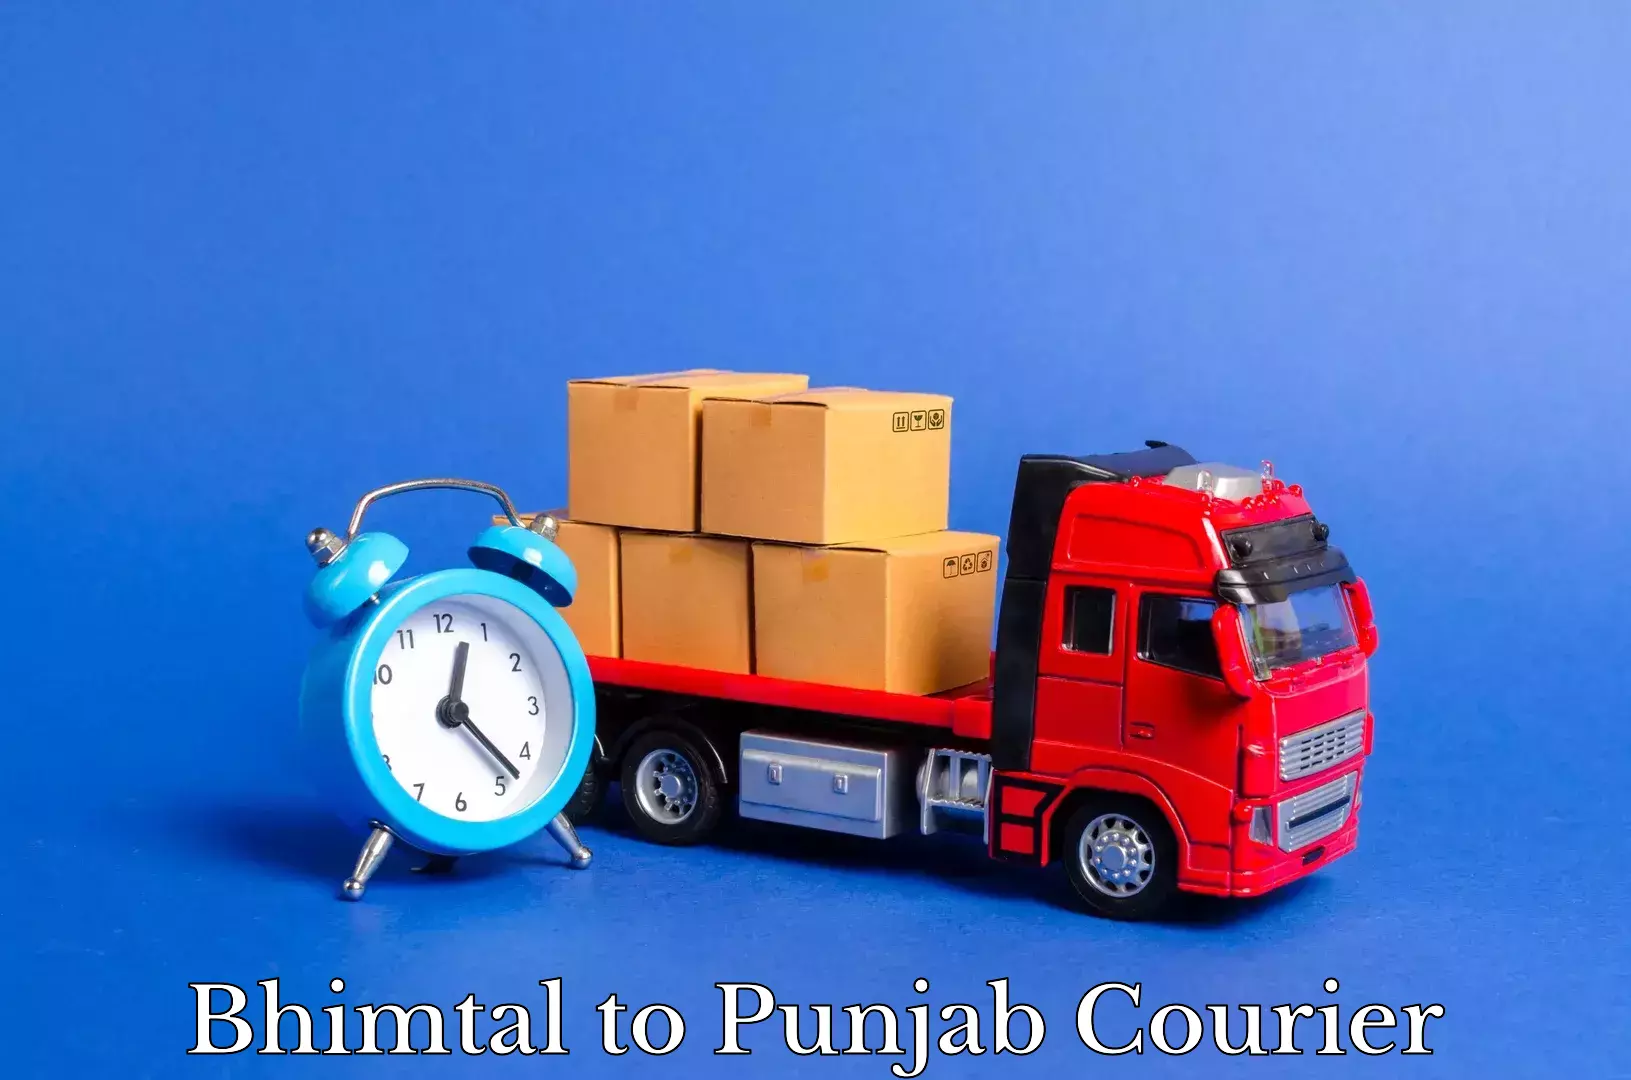 Trusted furniture transport Bhimtal to Punjab